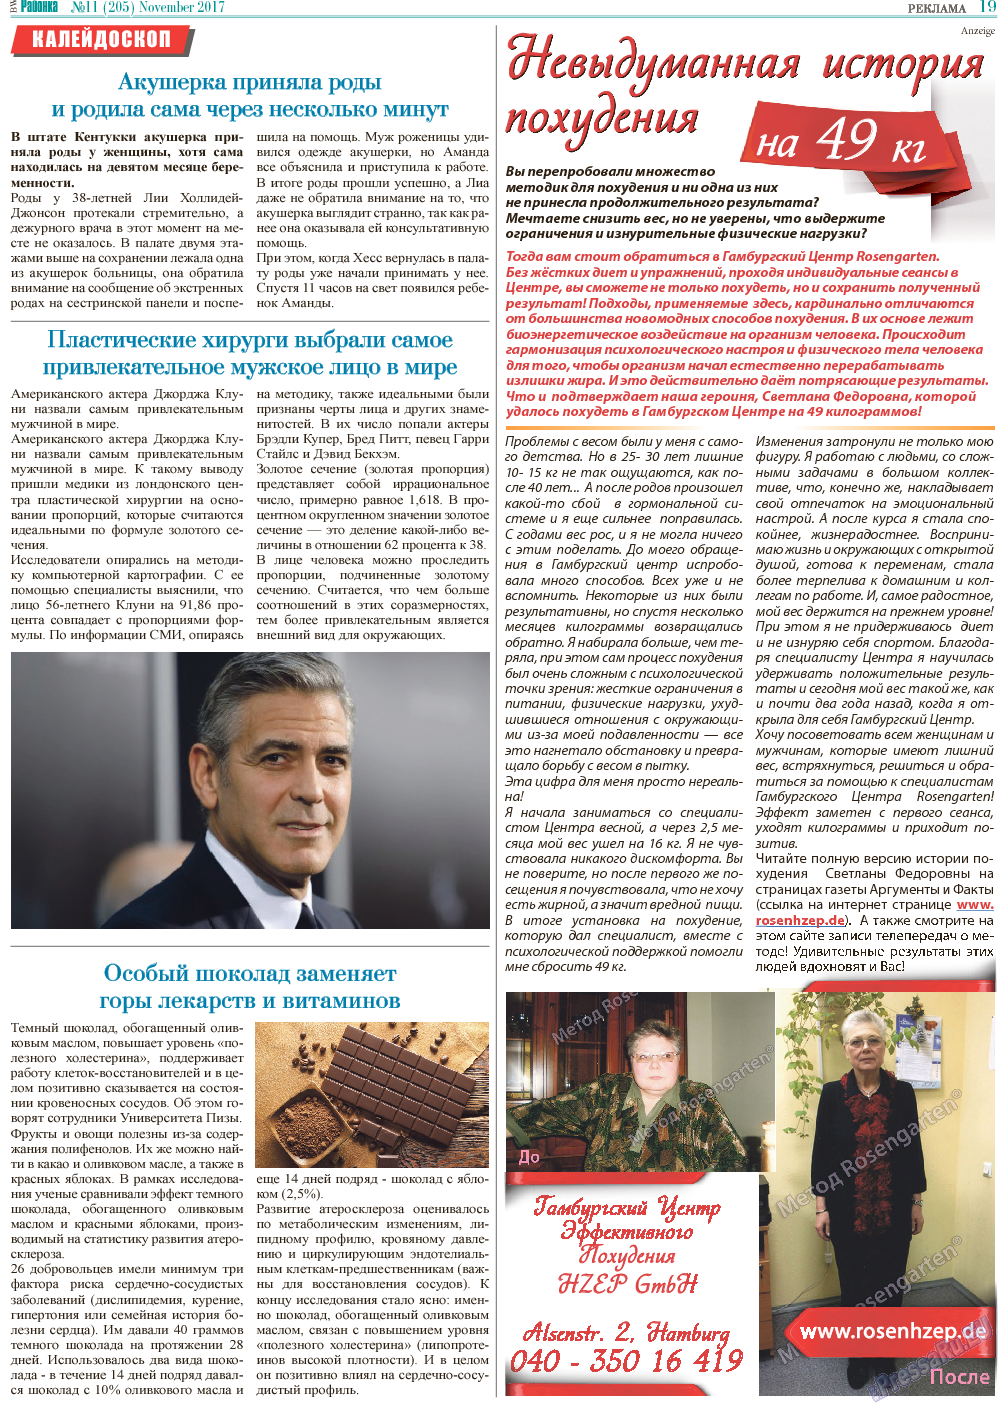 Районка-Süd-West, газета. 2017 №11 стр.19